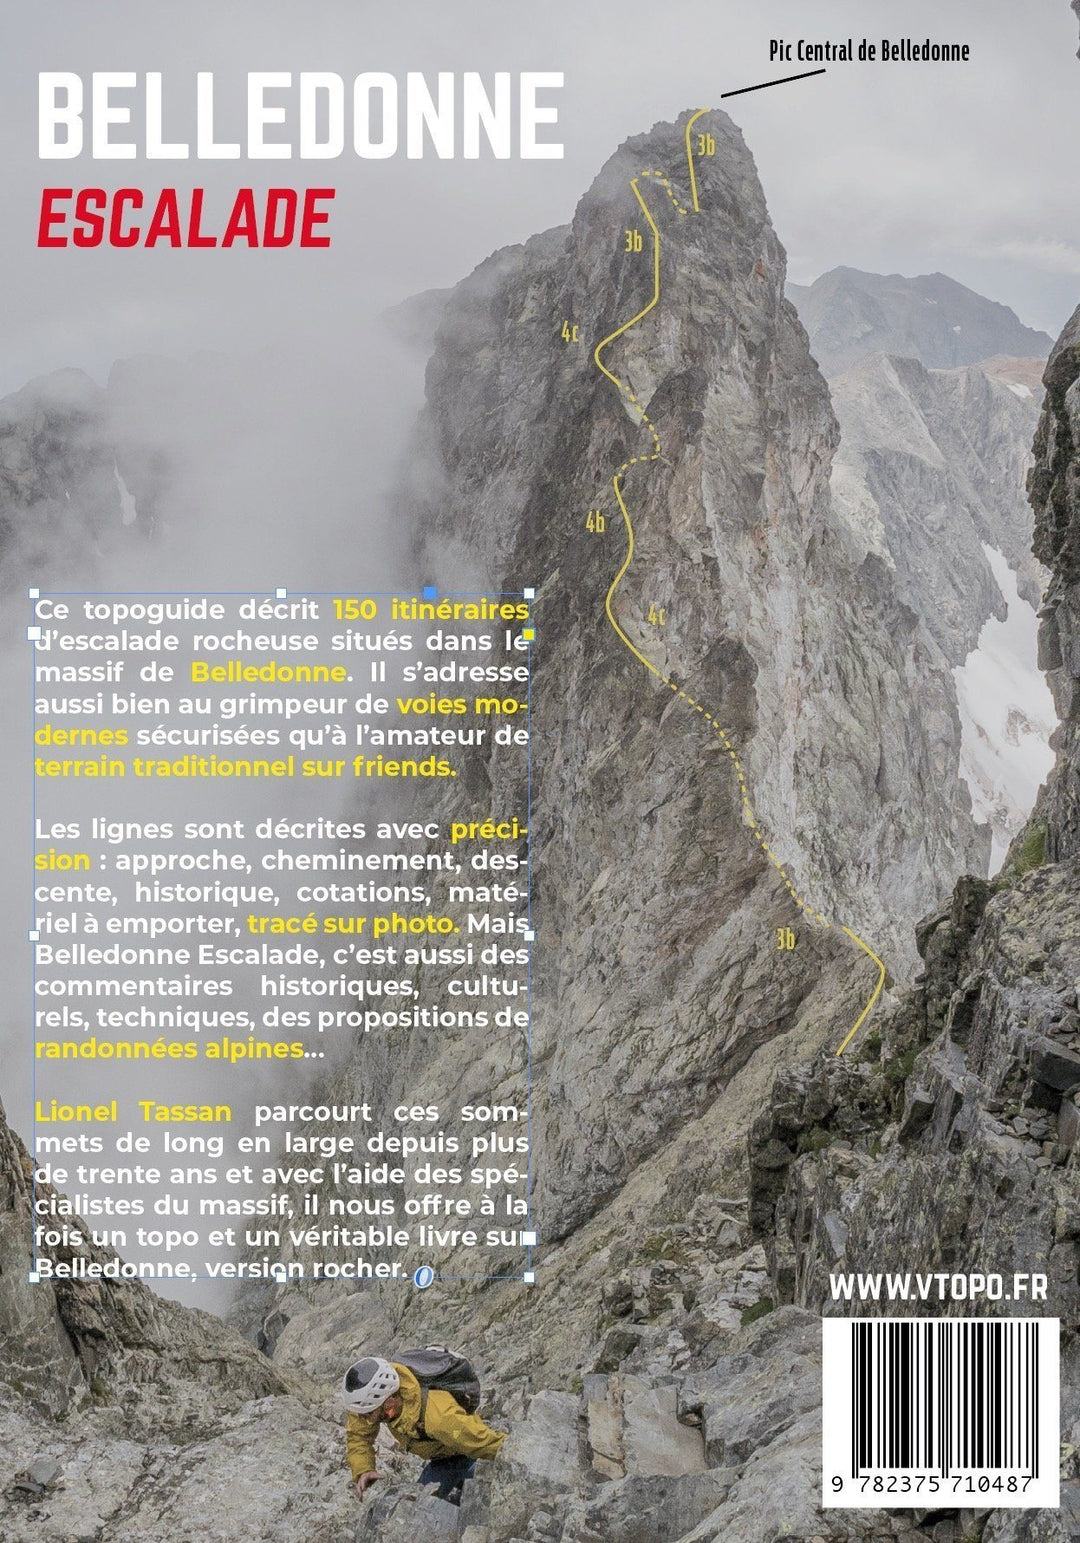 Topoguide d'escalade - Belledonne escalade | VTOPO guide de randonnée VTOPO 